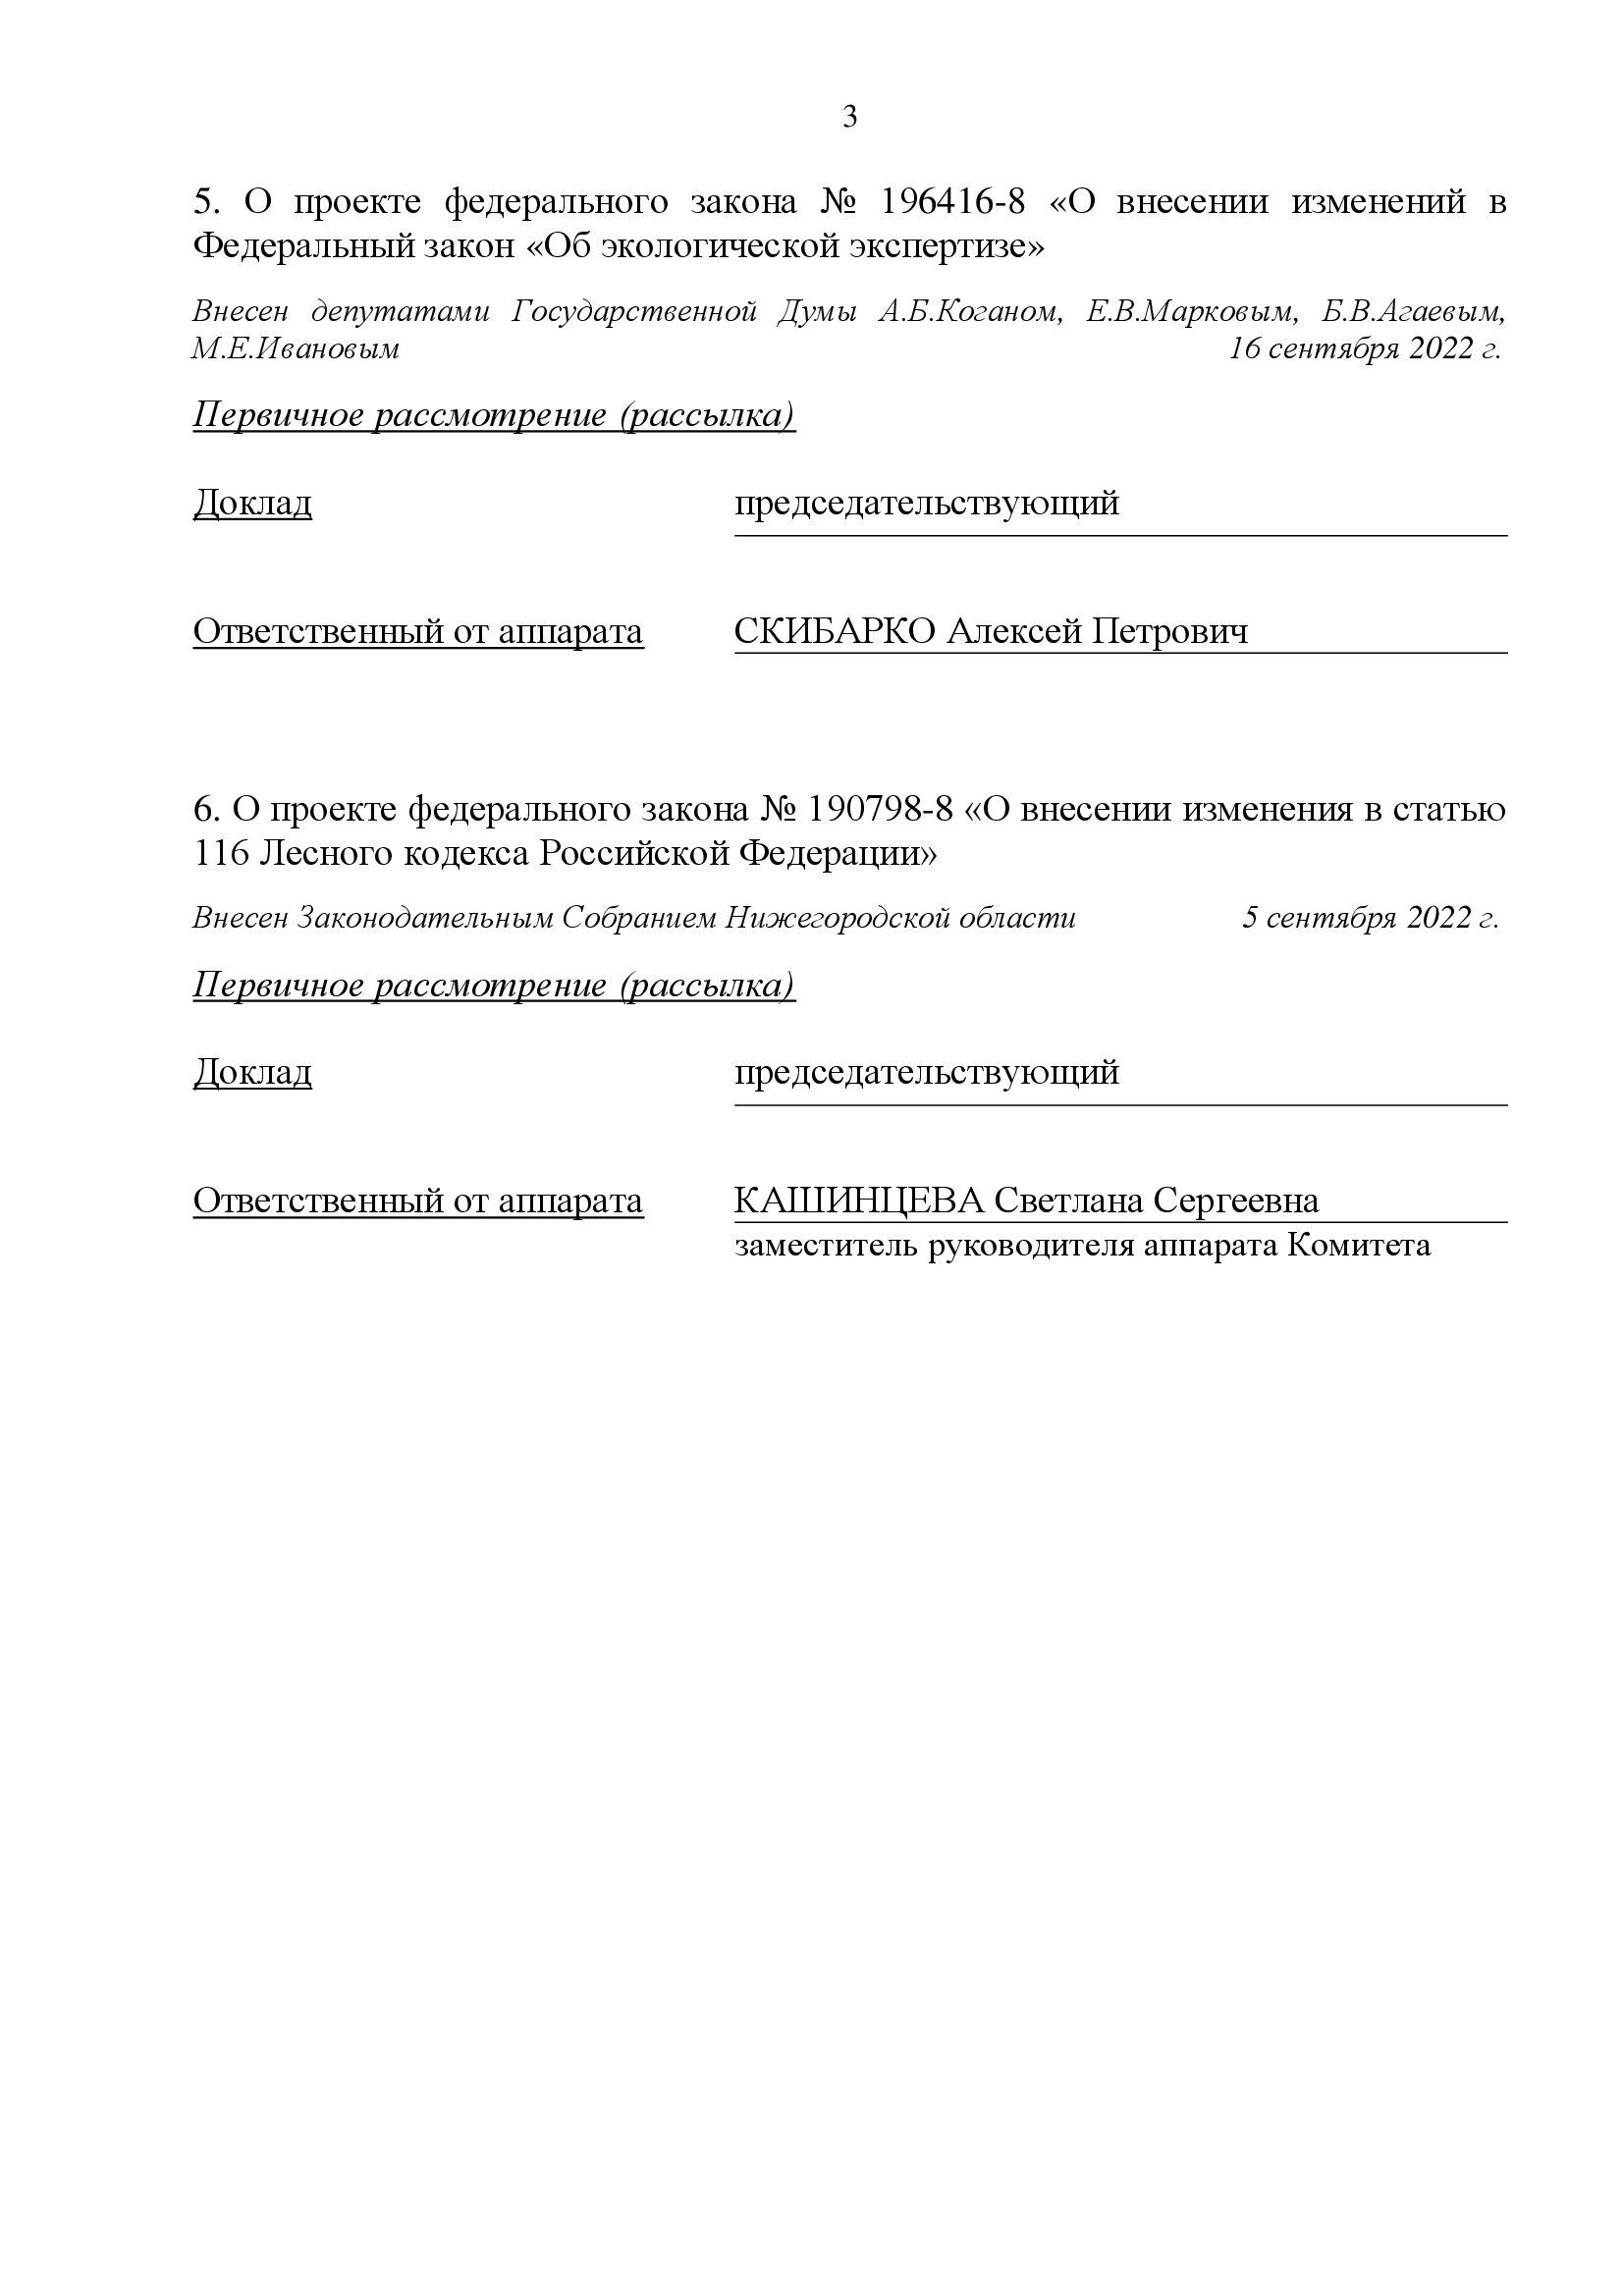 Опубликован документ о порядке проведения заседания Комитета Государственной Думы  по экологии, природным ресурсам и охране окружающей среды - фото 3